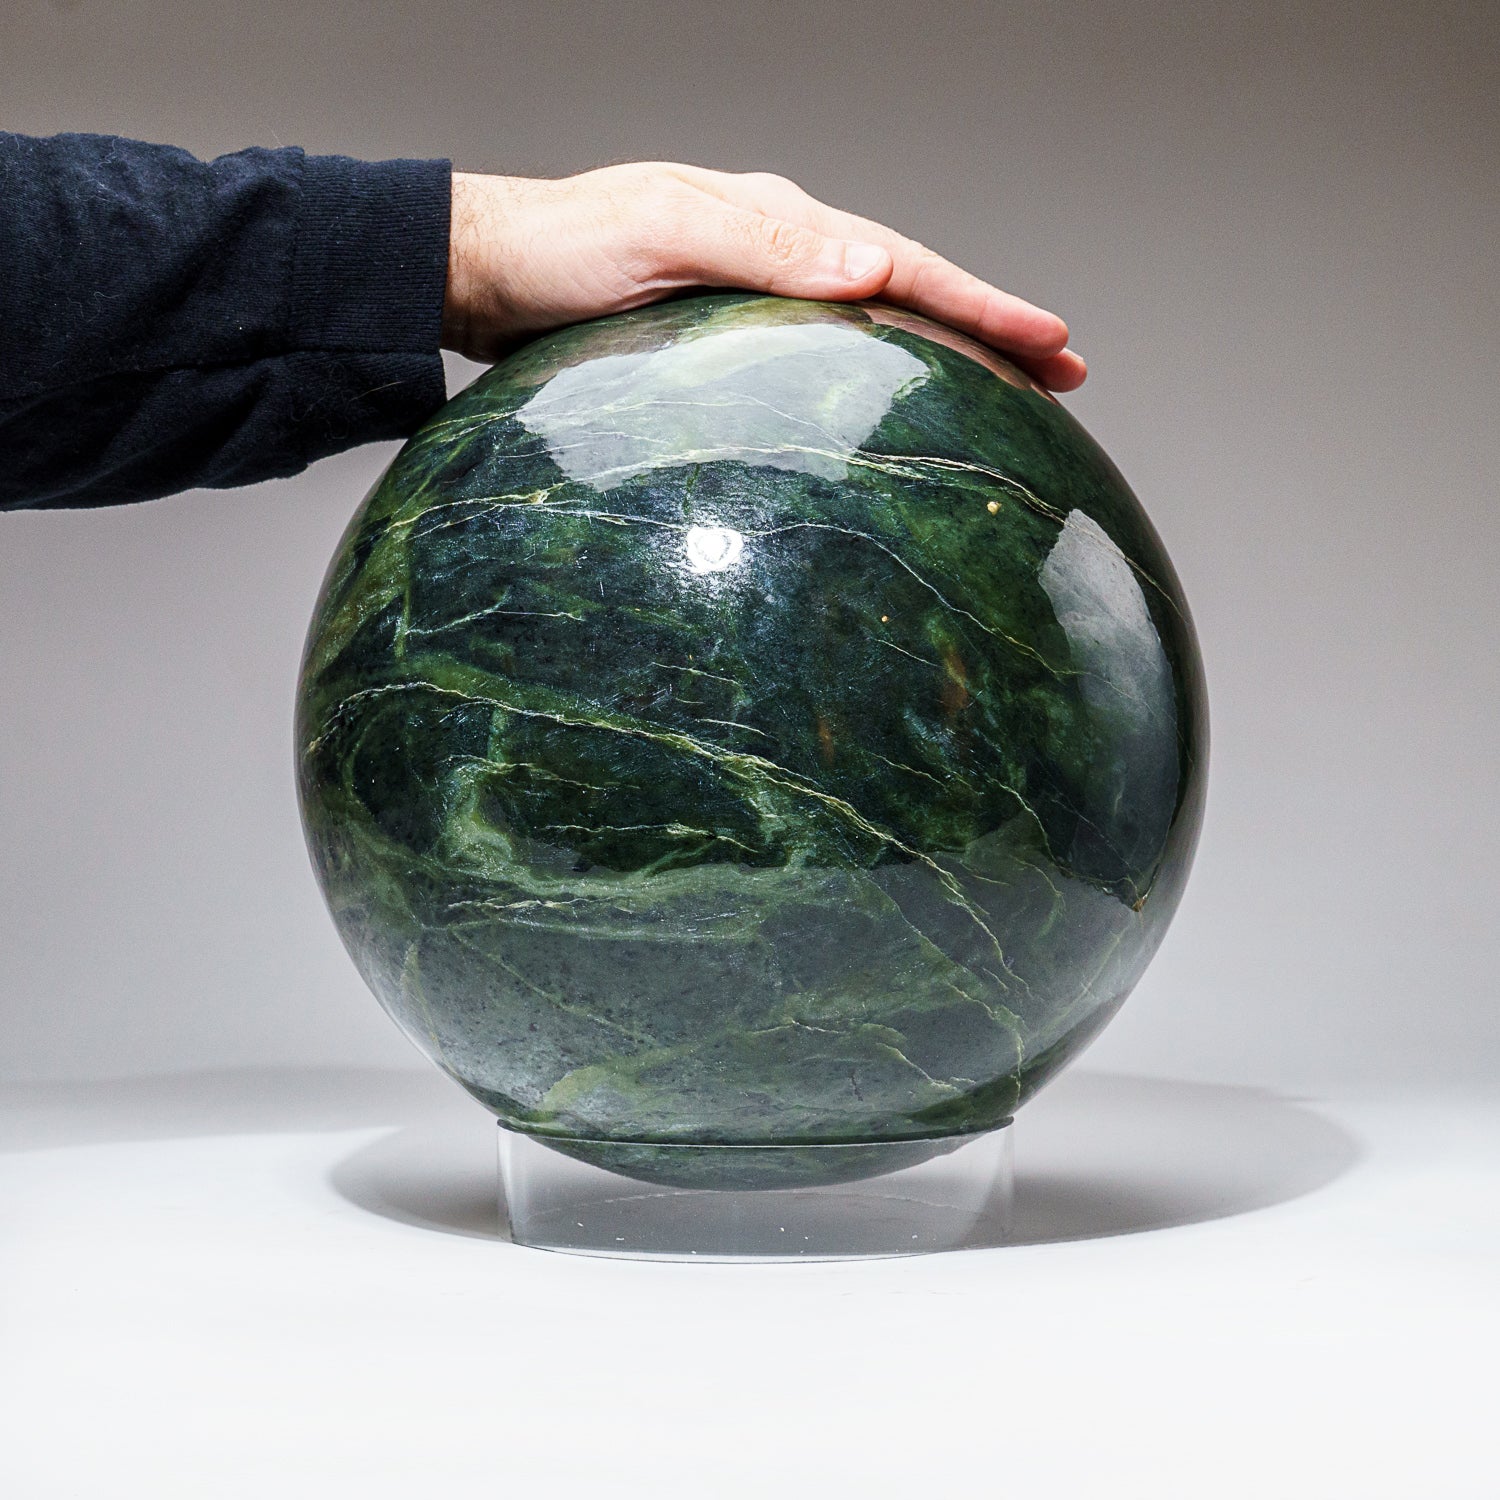 Huge Genuine Polished Nephrite Jade Sphere from Pakistan (65 lbs)